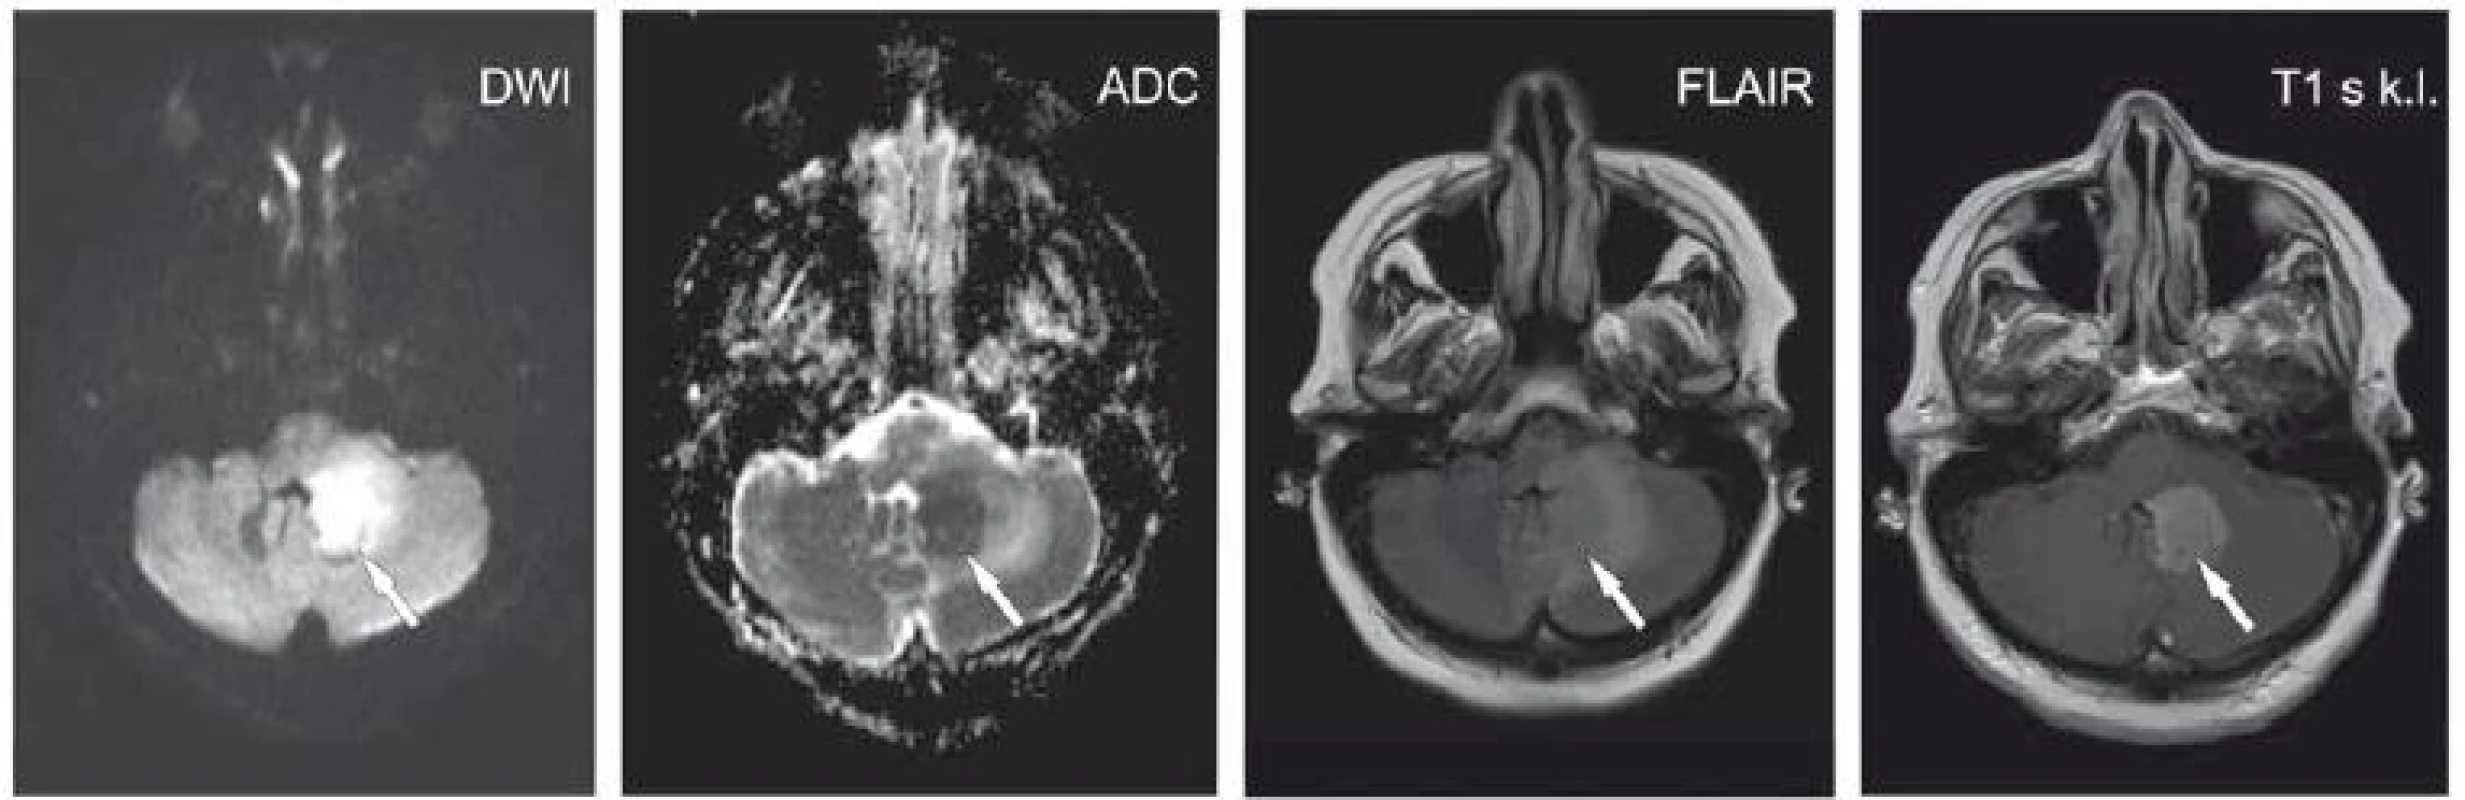 Pacientka ve věku 62 let s expresivní afázií, centrální lézí n. VII. vpravo a pravostrannou hemiparézou. V levé mozečkové hemisféře je patrné ložisko (šipky) při IV. komoře, která je mírně dislokována doprava. Je patrný DWI hypersignální okrsek s ADC hyposignálním korelátem.
Na FLAIR je ložisko lehce hypersignální s kolaterálním edémem. Po aplikaci kontrastní látky se léze homogenně nasytila. Další obdobné ložisko temporo-parieto-okcipitálně vlevo. Lymfom.<br>
ADC – aparentní difuzní koefi cient; DWI – difuzí vážený obraz; FLAIR – inverzní zobrazení s potlačením signálu tekutiny; k. l. – kontrastní látka<br>
Fig. 3. A 62-year-old woman with expressive aphasia, a central lesion of the seventh cranial nerve on the right side, and right-sided hemiparesis.
The lesion is apparent in the left cerebellar hemisphere (arrows) alongside the fourth ventricle that is dislocated slightly to the right.
DWI hypersignal area with an ADC hyposignal corresponding area is seen. The lesion is slightly hyper-signal on FLAIR with collateral
edema. Homogeneous enhancement was seen after contrast administration. Another similar lesion is temporo-parieto-occipitally on the left.
Lymphoma.<br>
ADC – apparent diffusion coefficient; DWI – diffusion-weighted image; FLAIR – fluid attenuated inversion recovery; k. l. – contrast agent